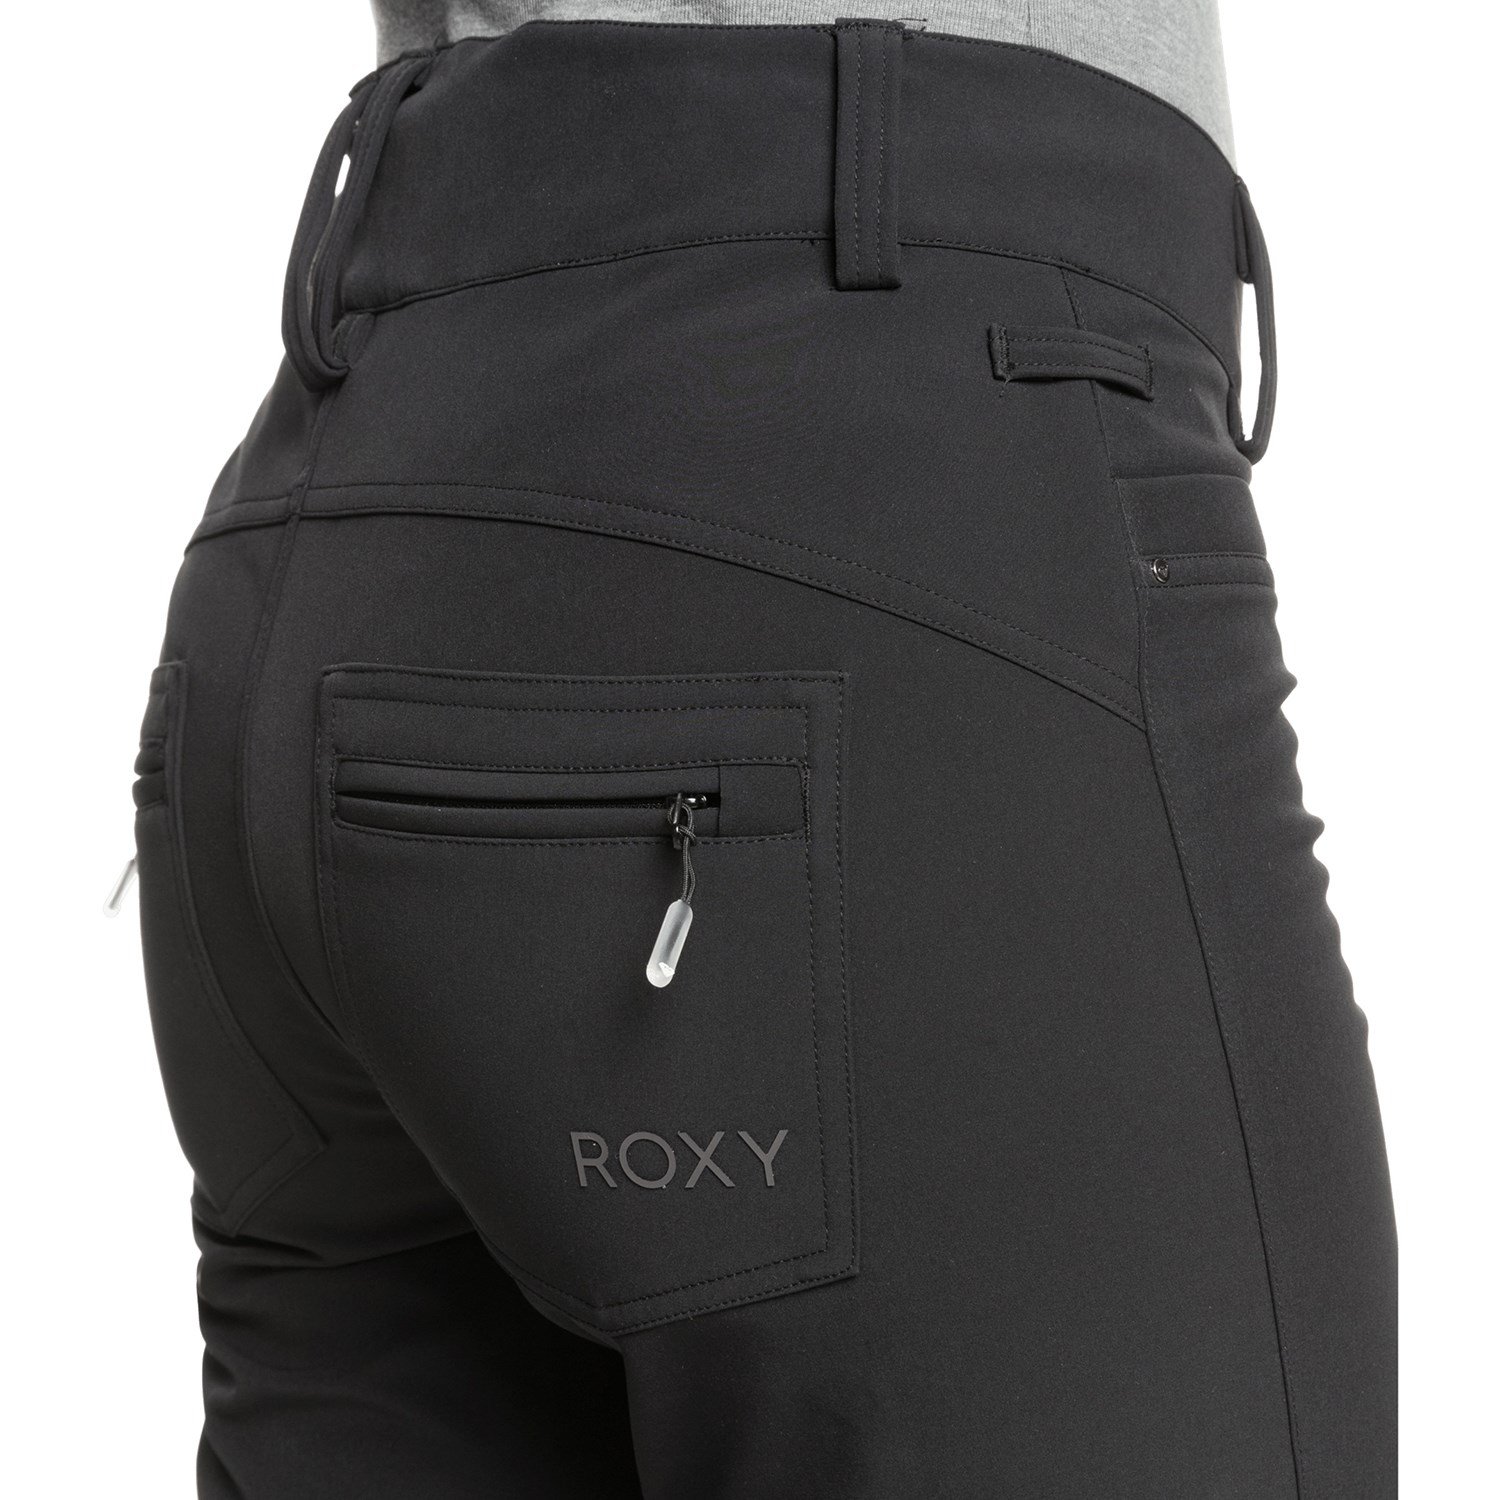 Roxy Creek Pants - Women's